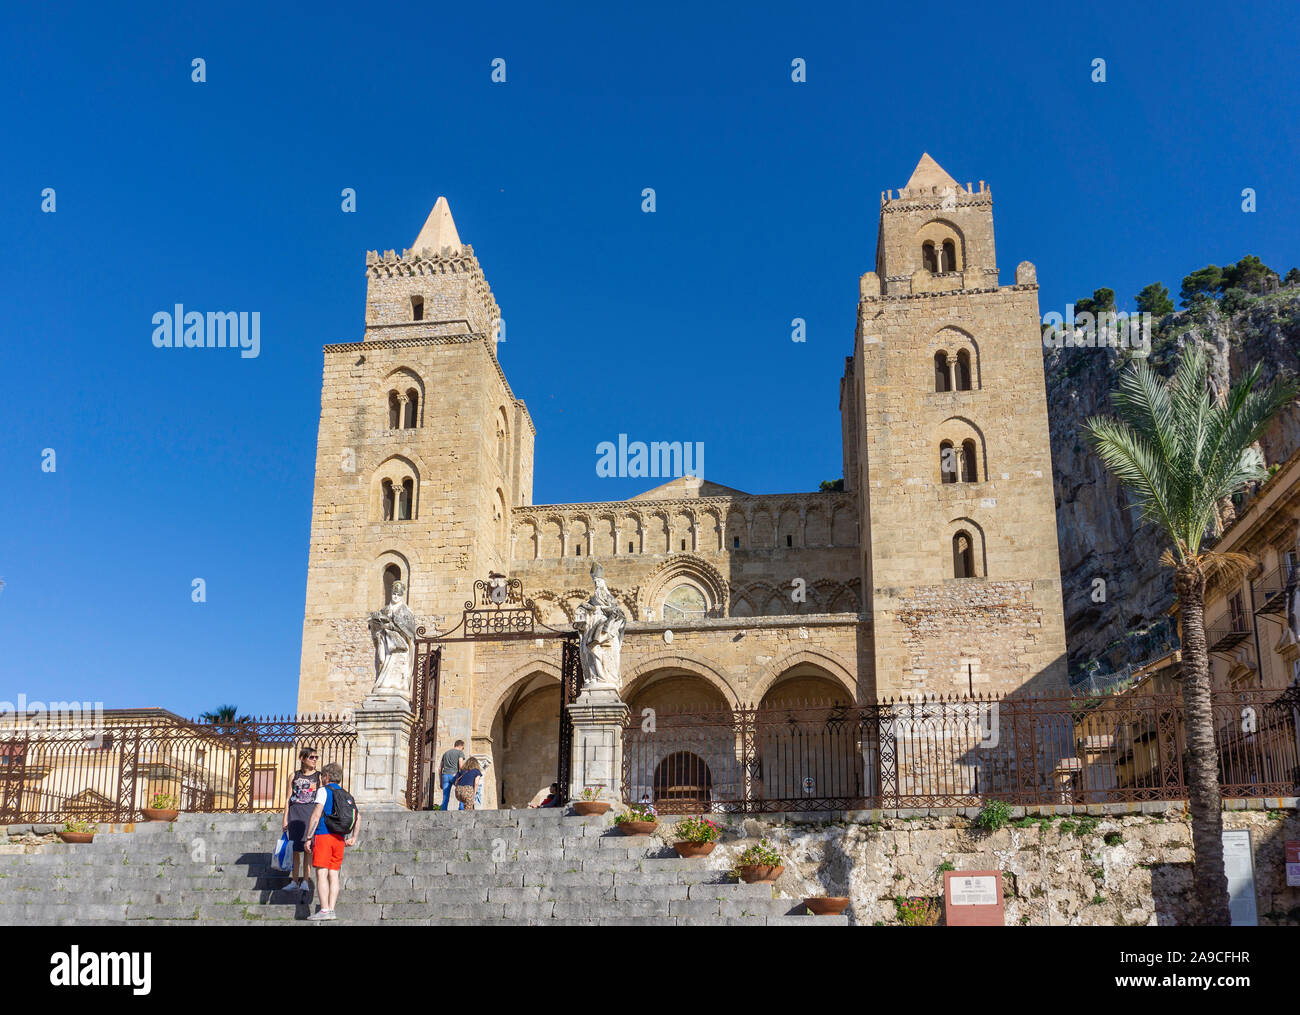 La Cathédrale de Cefalù, Sicile, une église catholique romaine datant de 1131.Il est un des neuf structures incluses dans le patrimoine mondial de l'UNESCO Banque D'Images